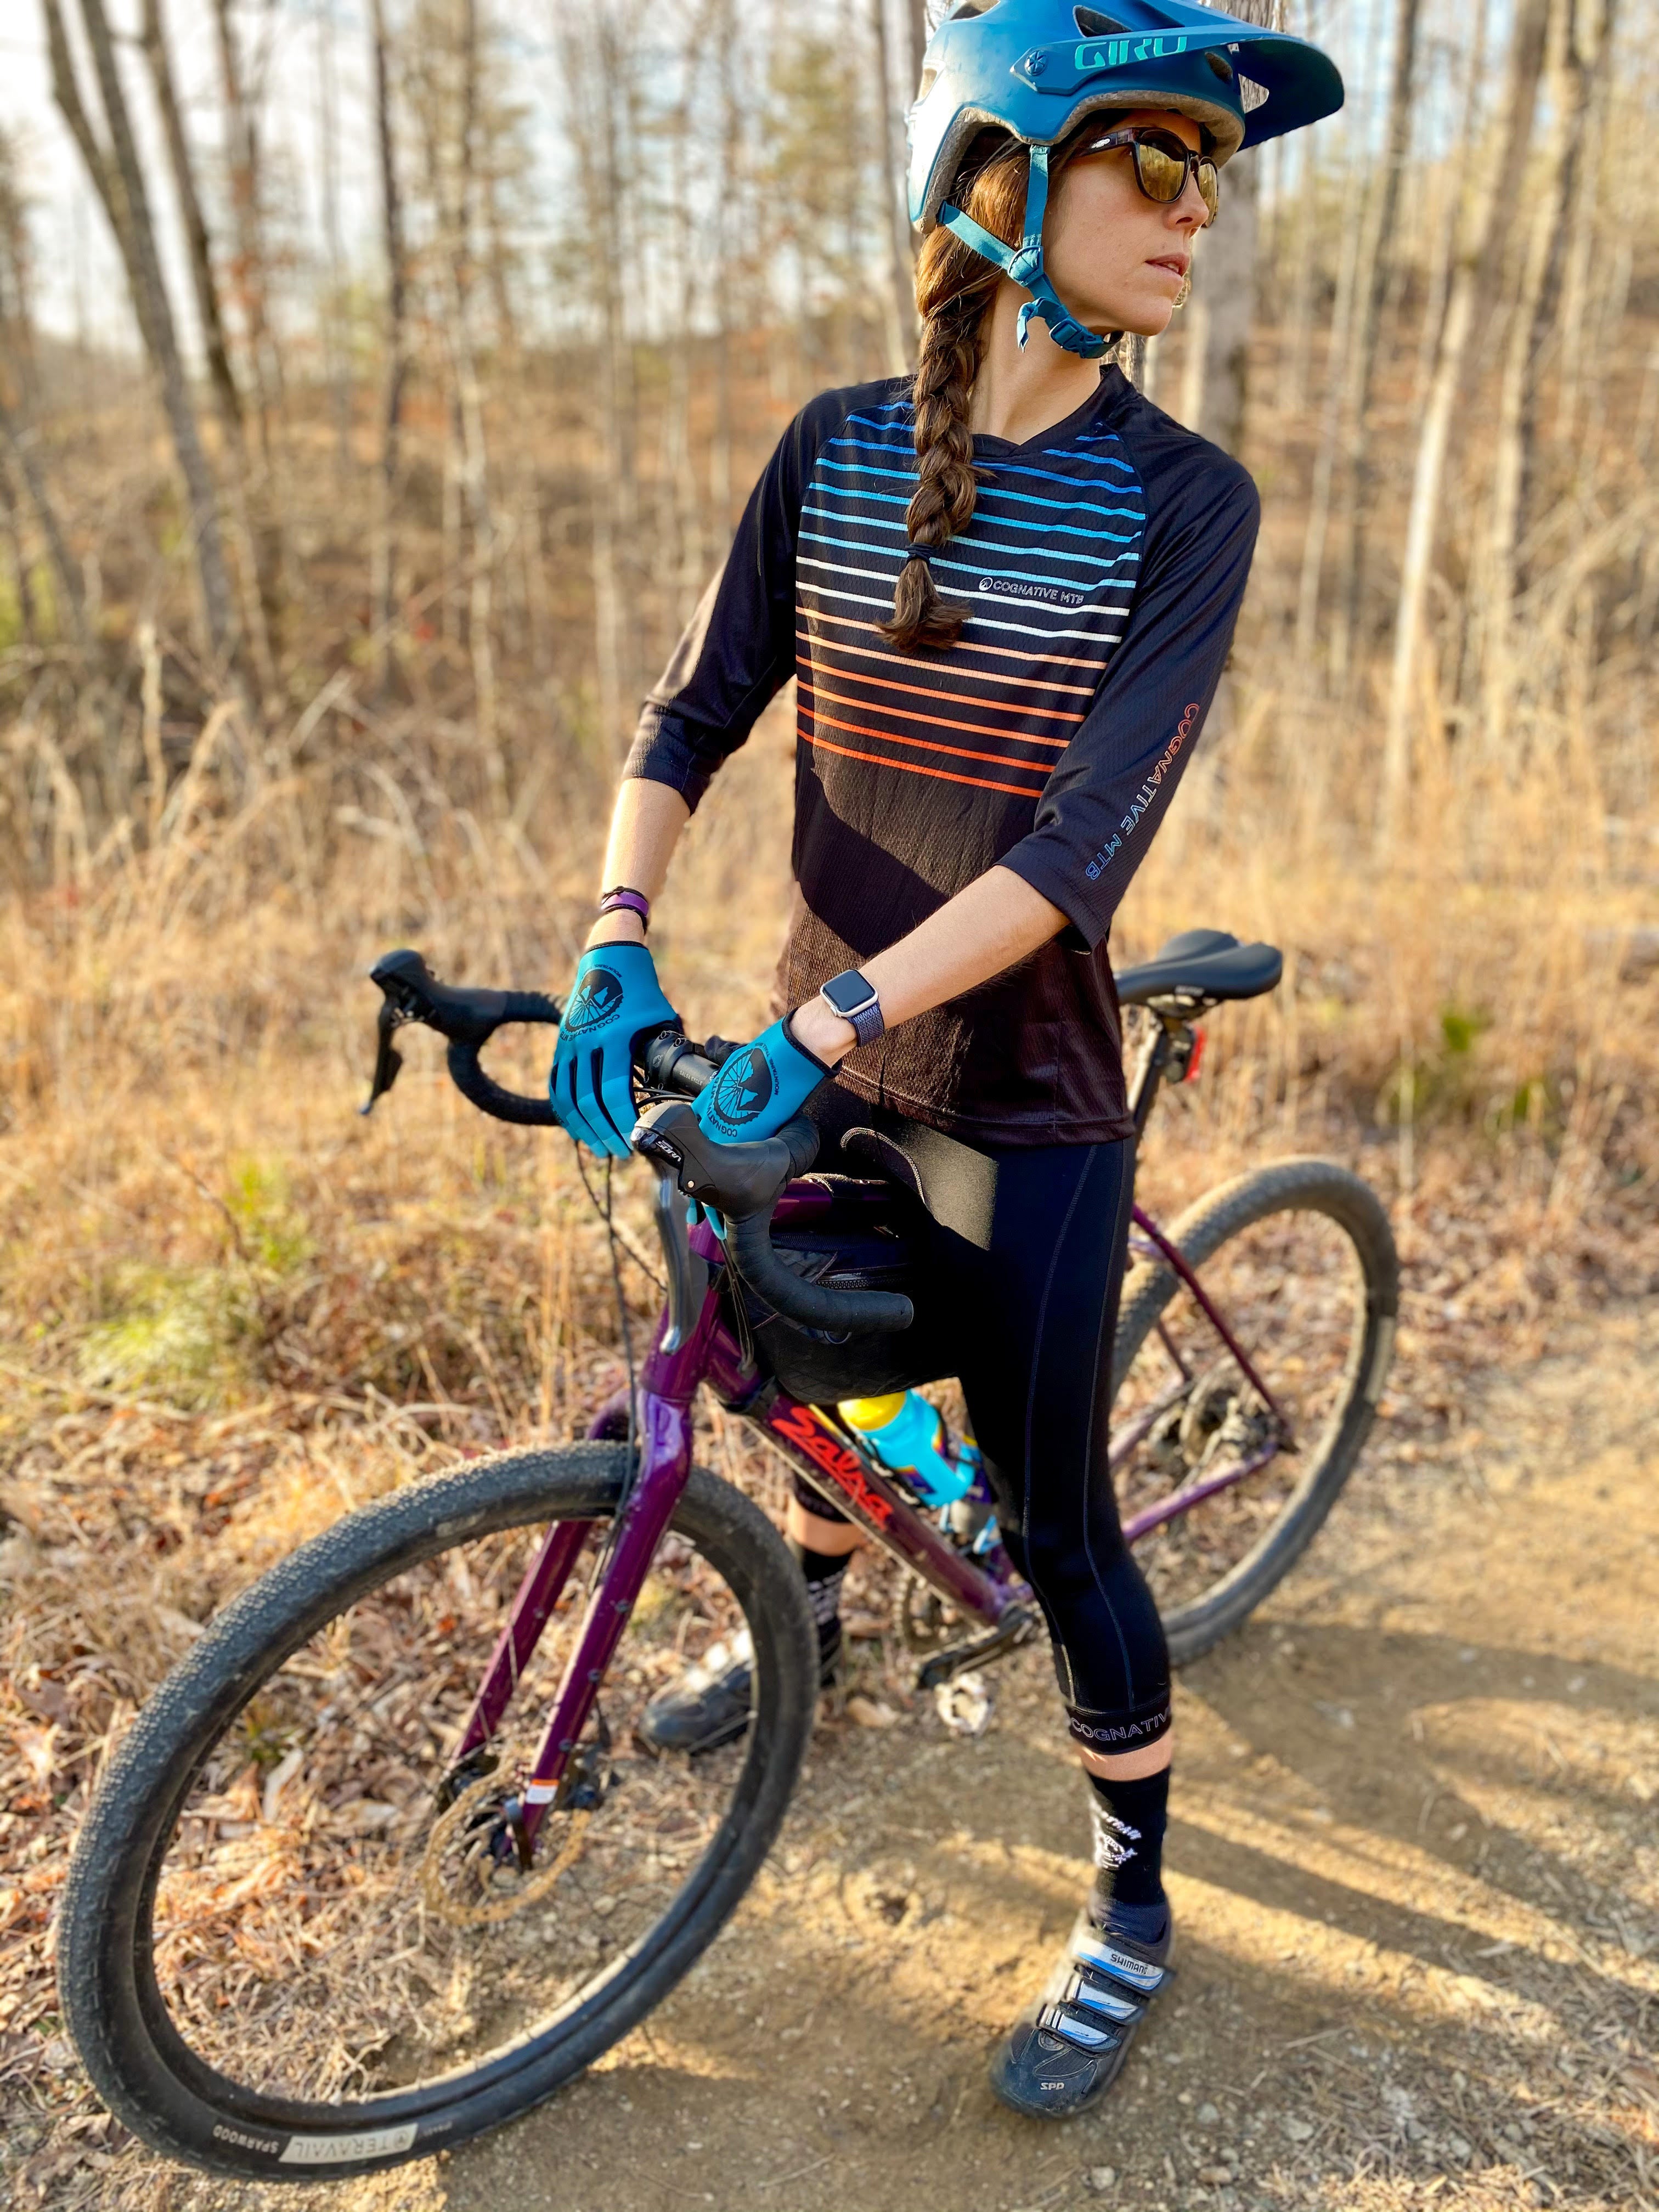 Women's Cycling 3/4 Tights - Padded Bike Shorts - Mountain Bike